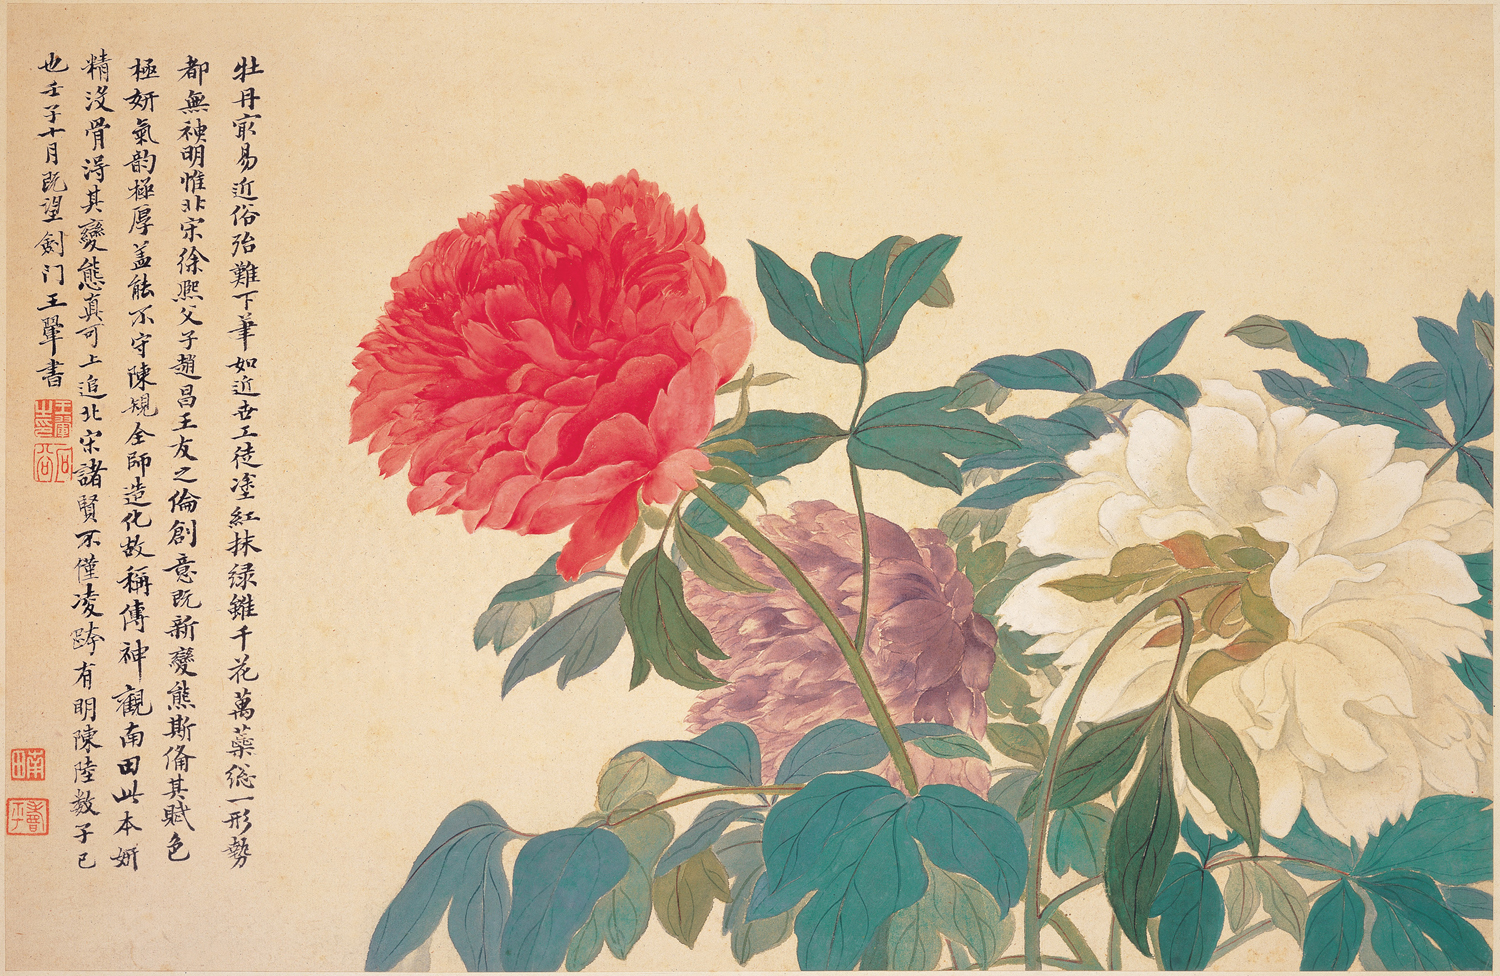 牡丹 by 恽 寿平 - 1672 - 28.5 x 43.0 cm 